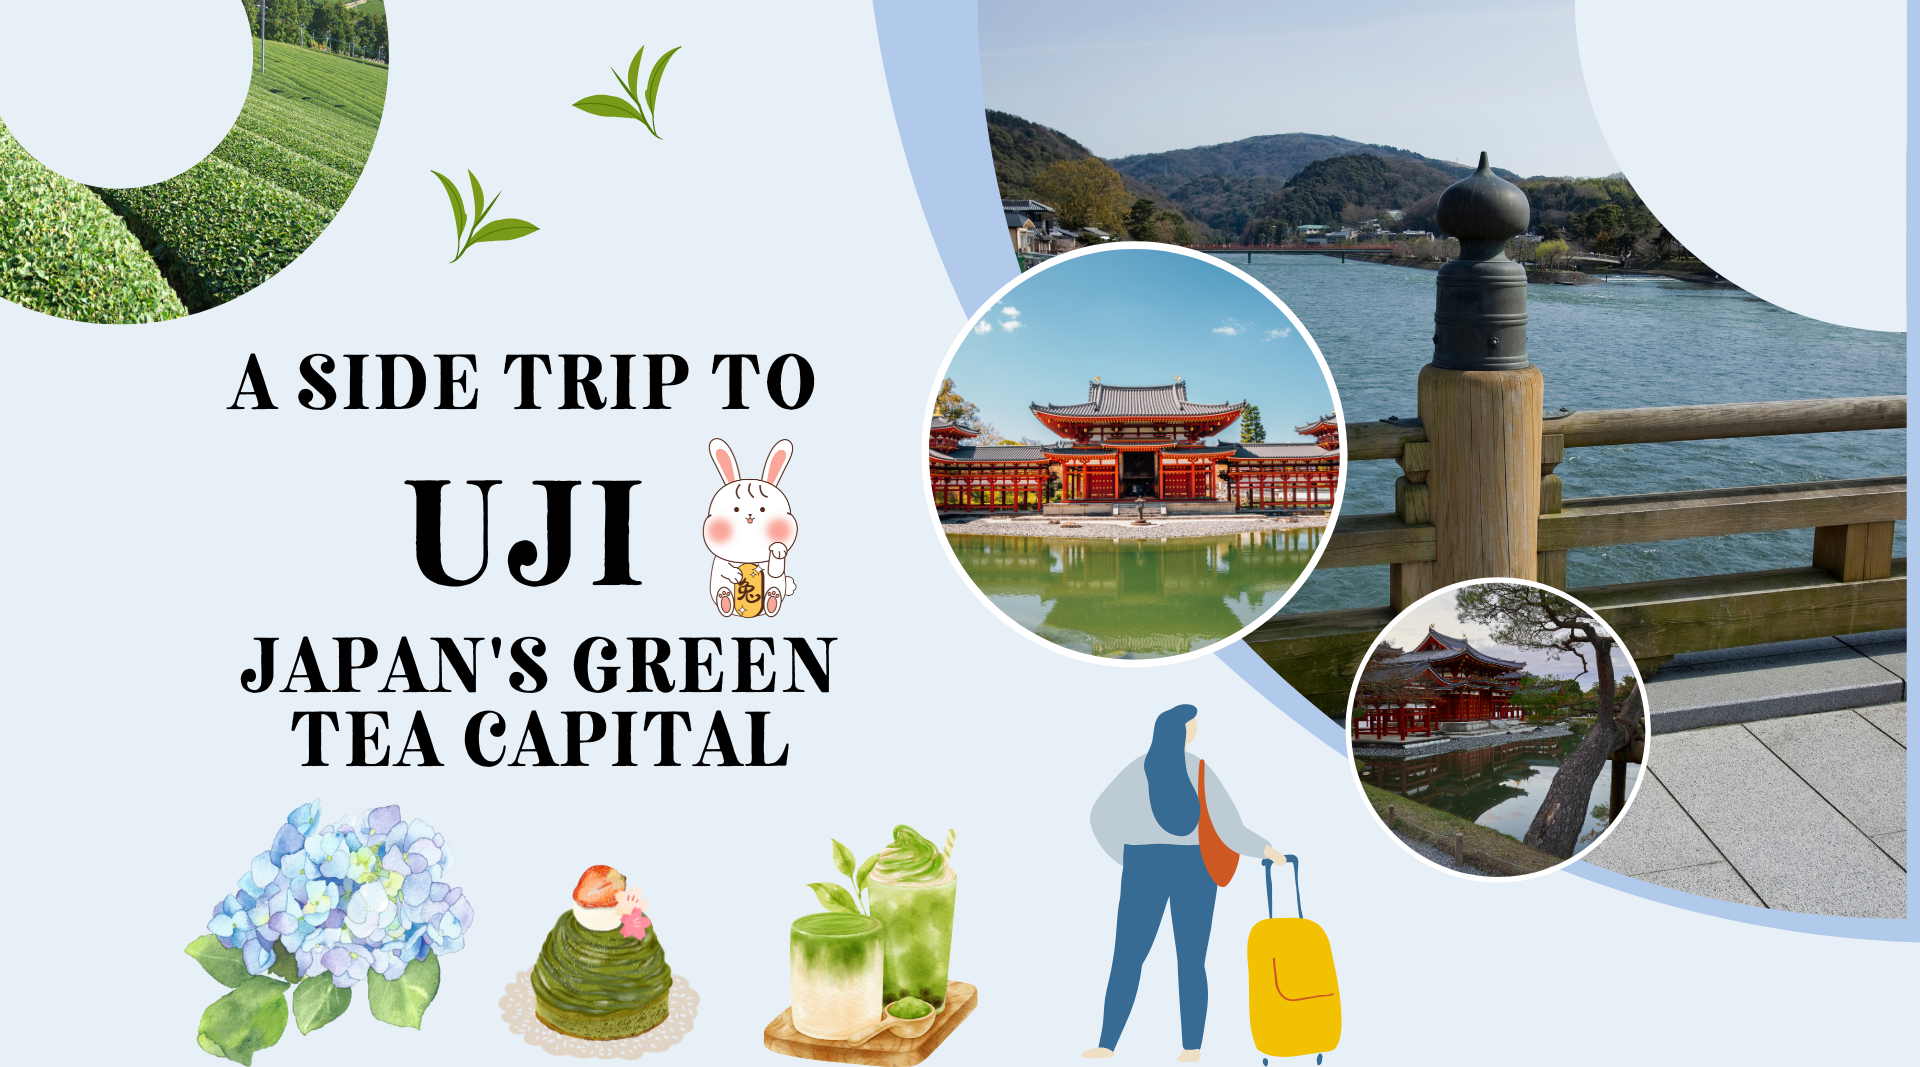 A side trip to Uji, Japan's Green Tea Capital